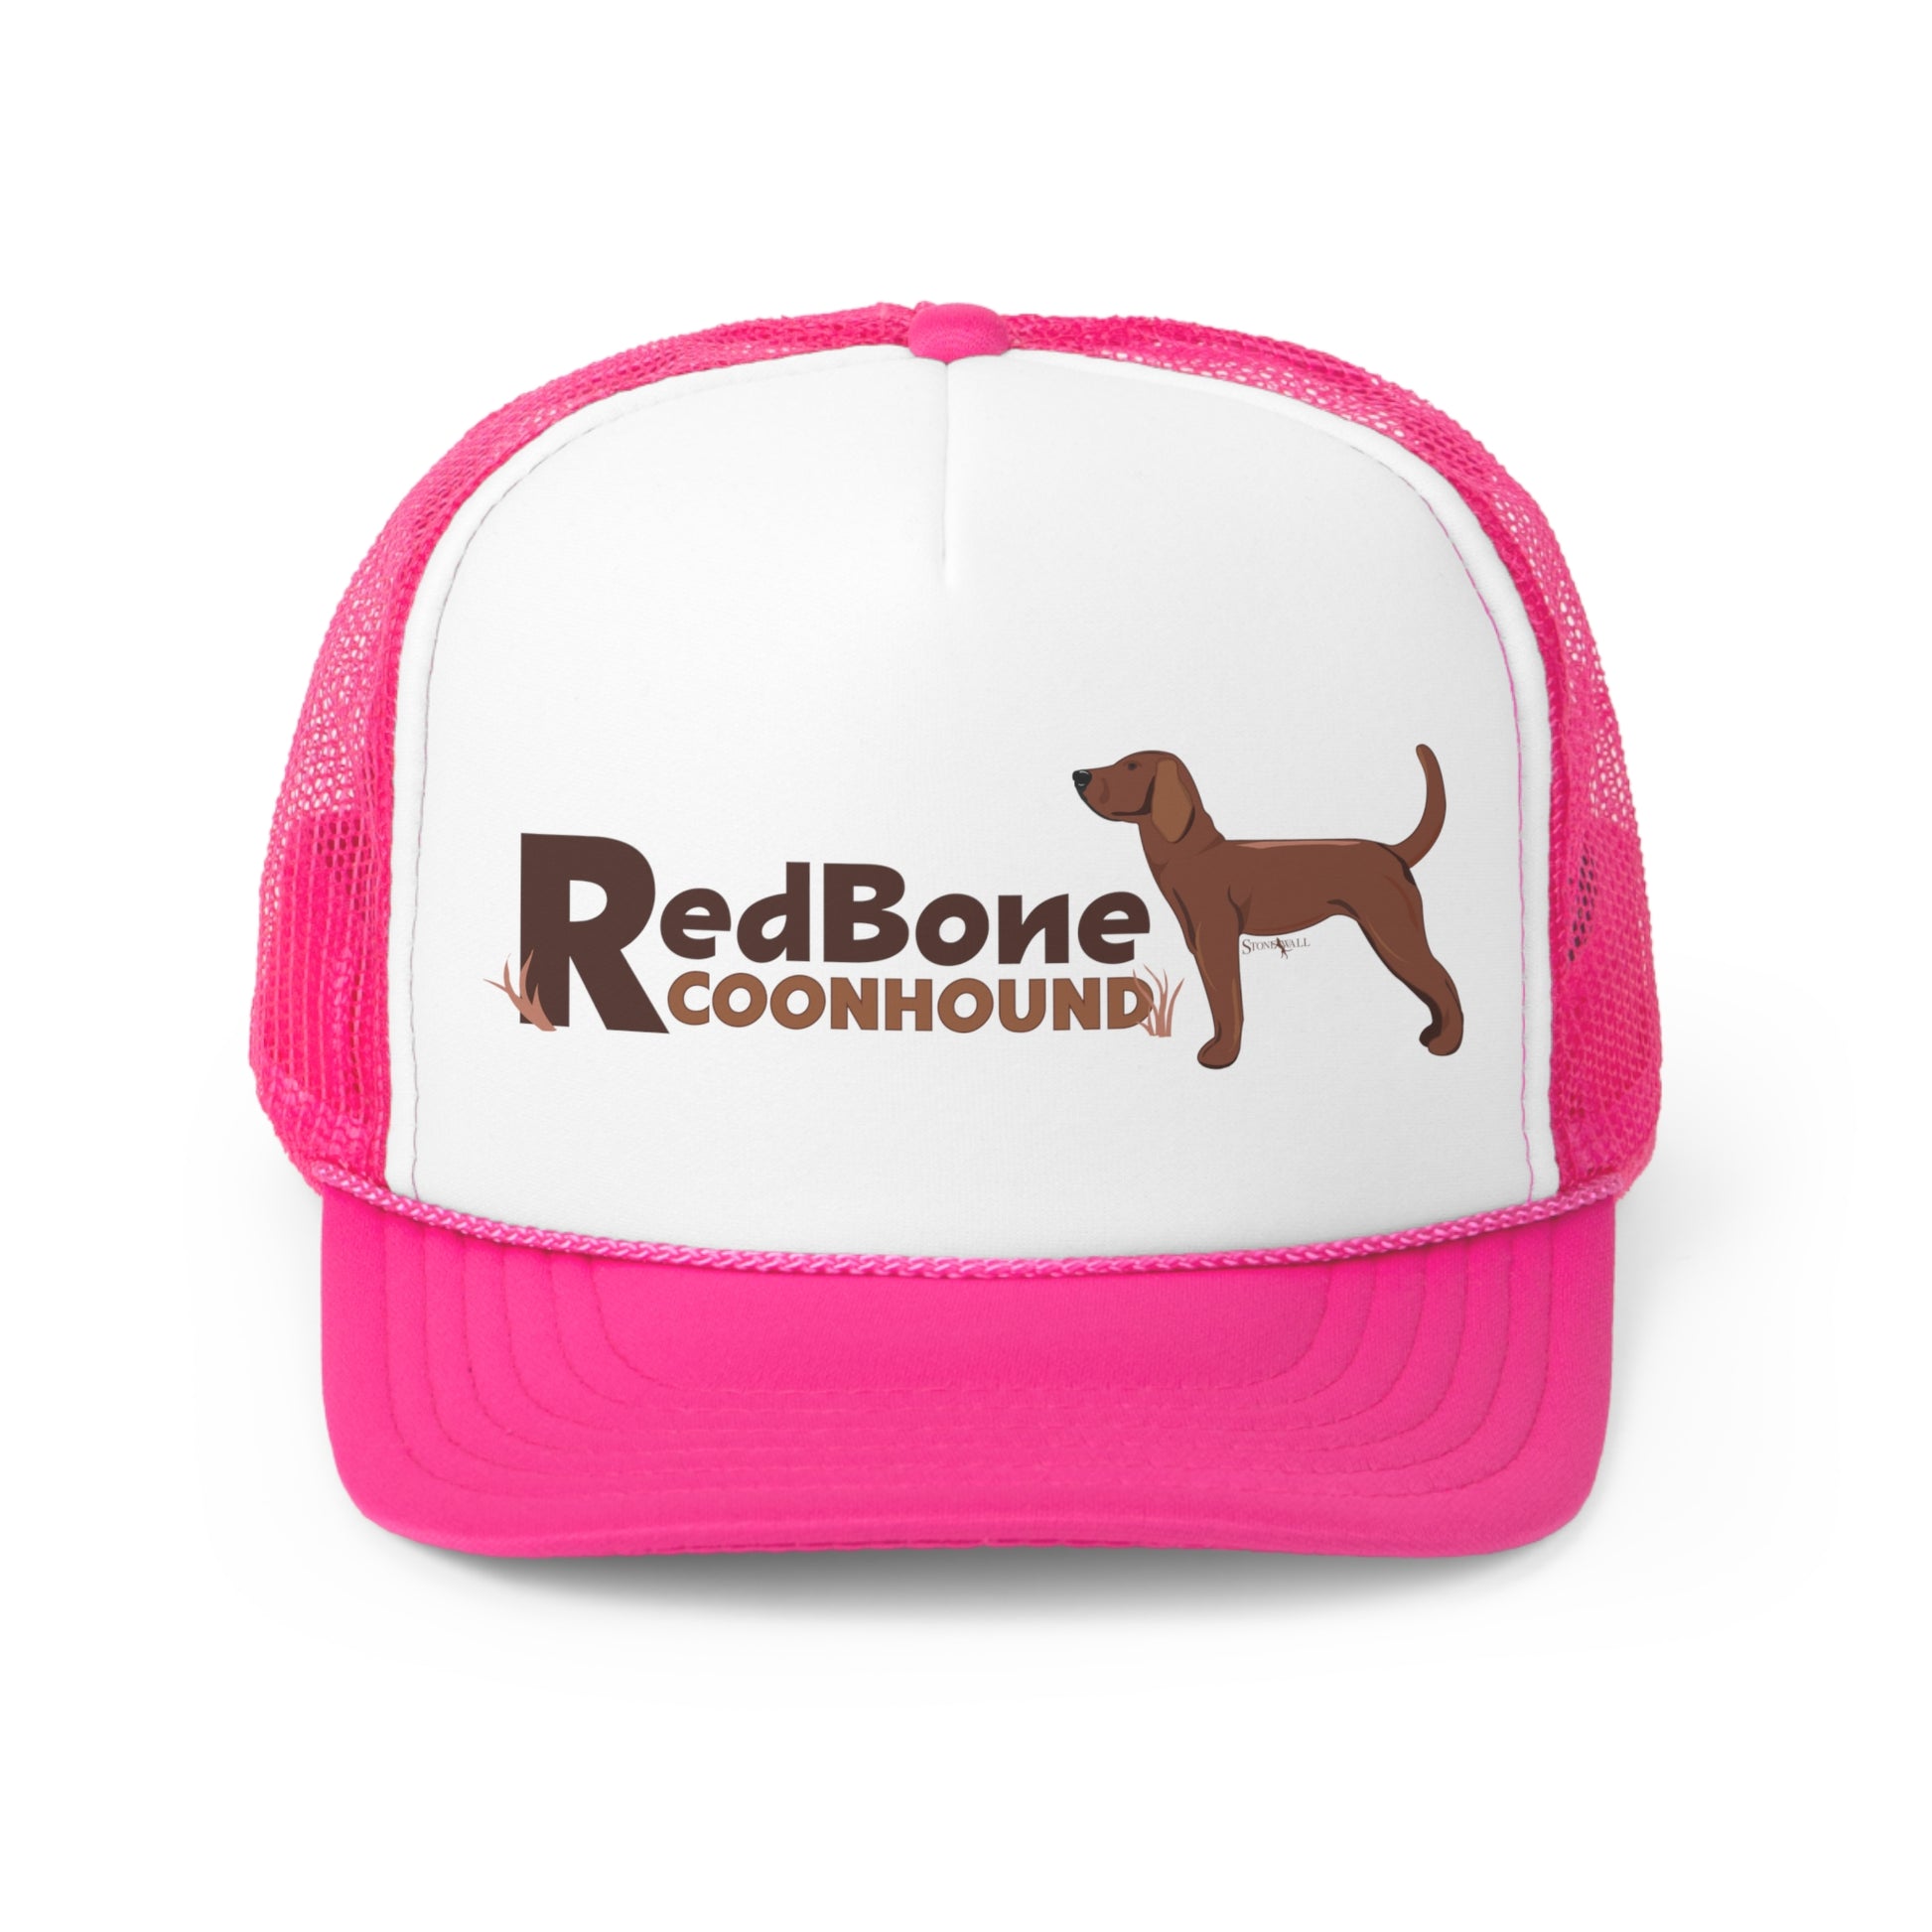 Redbone Coonhound Trucker hat